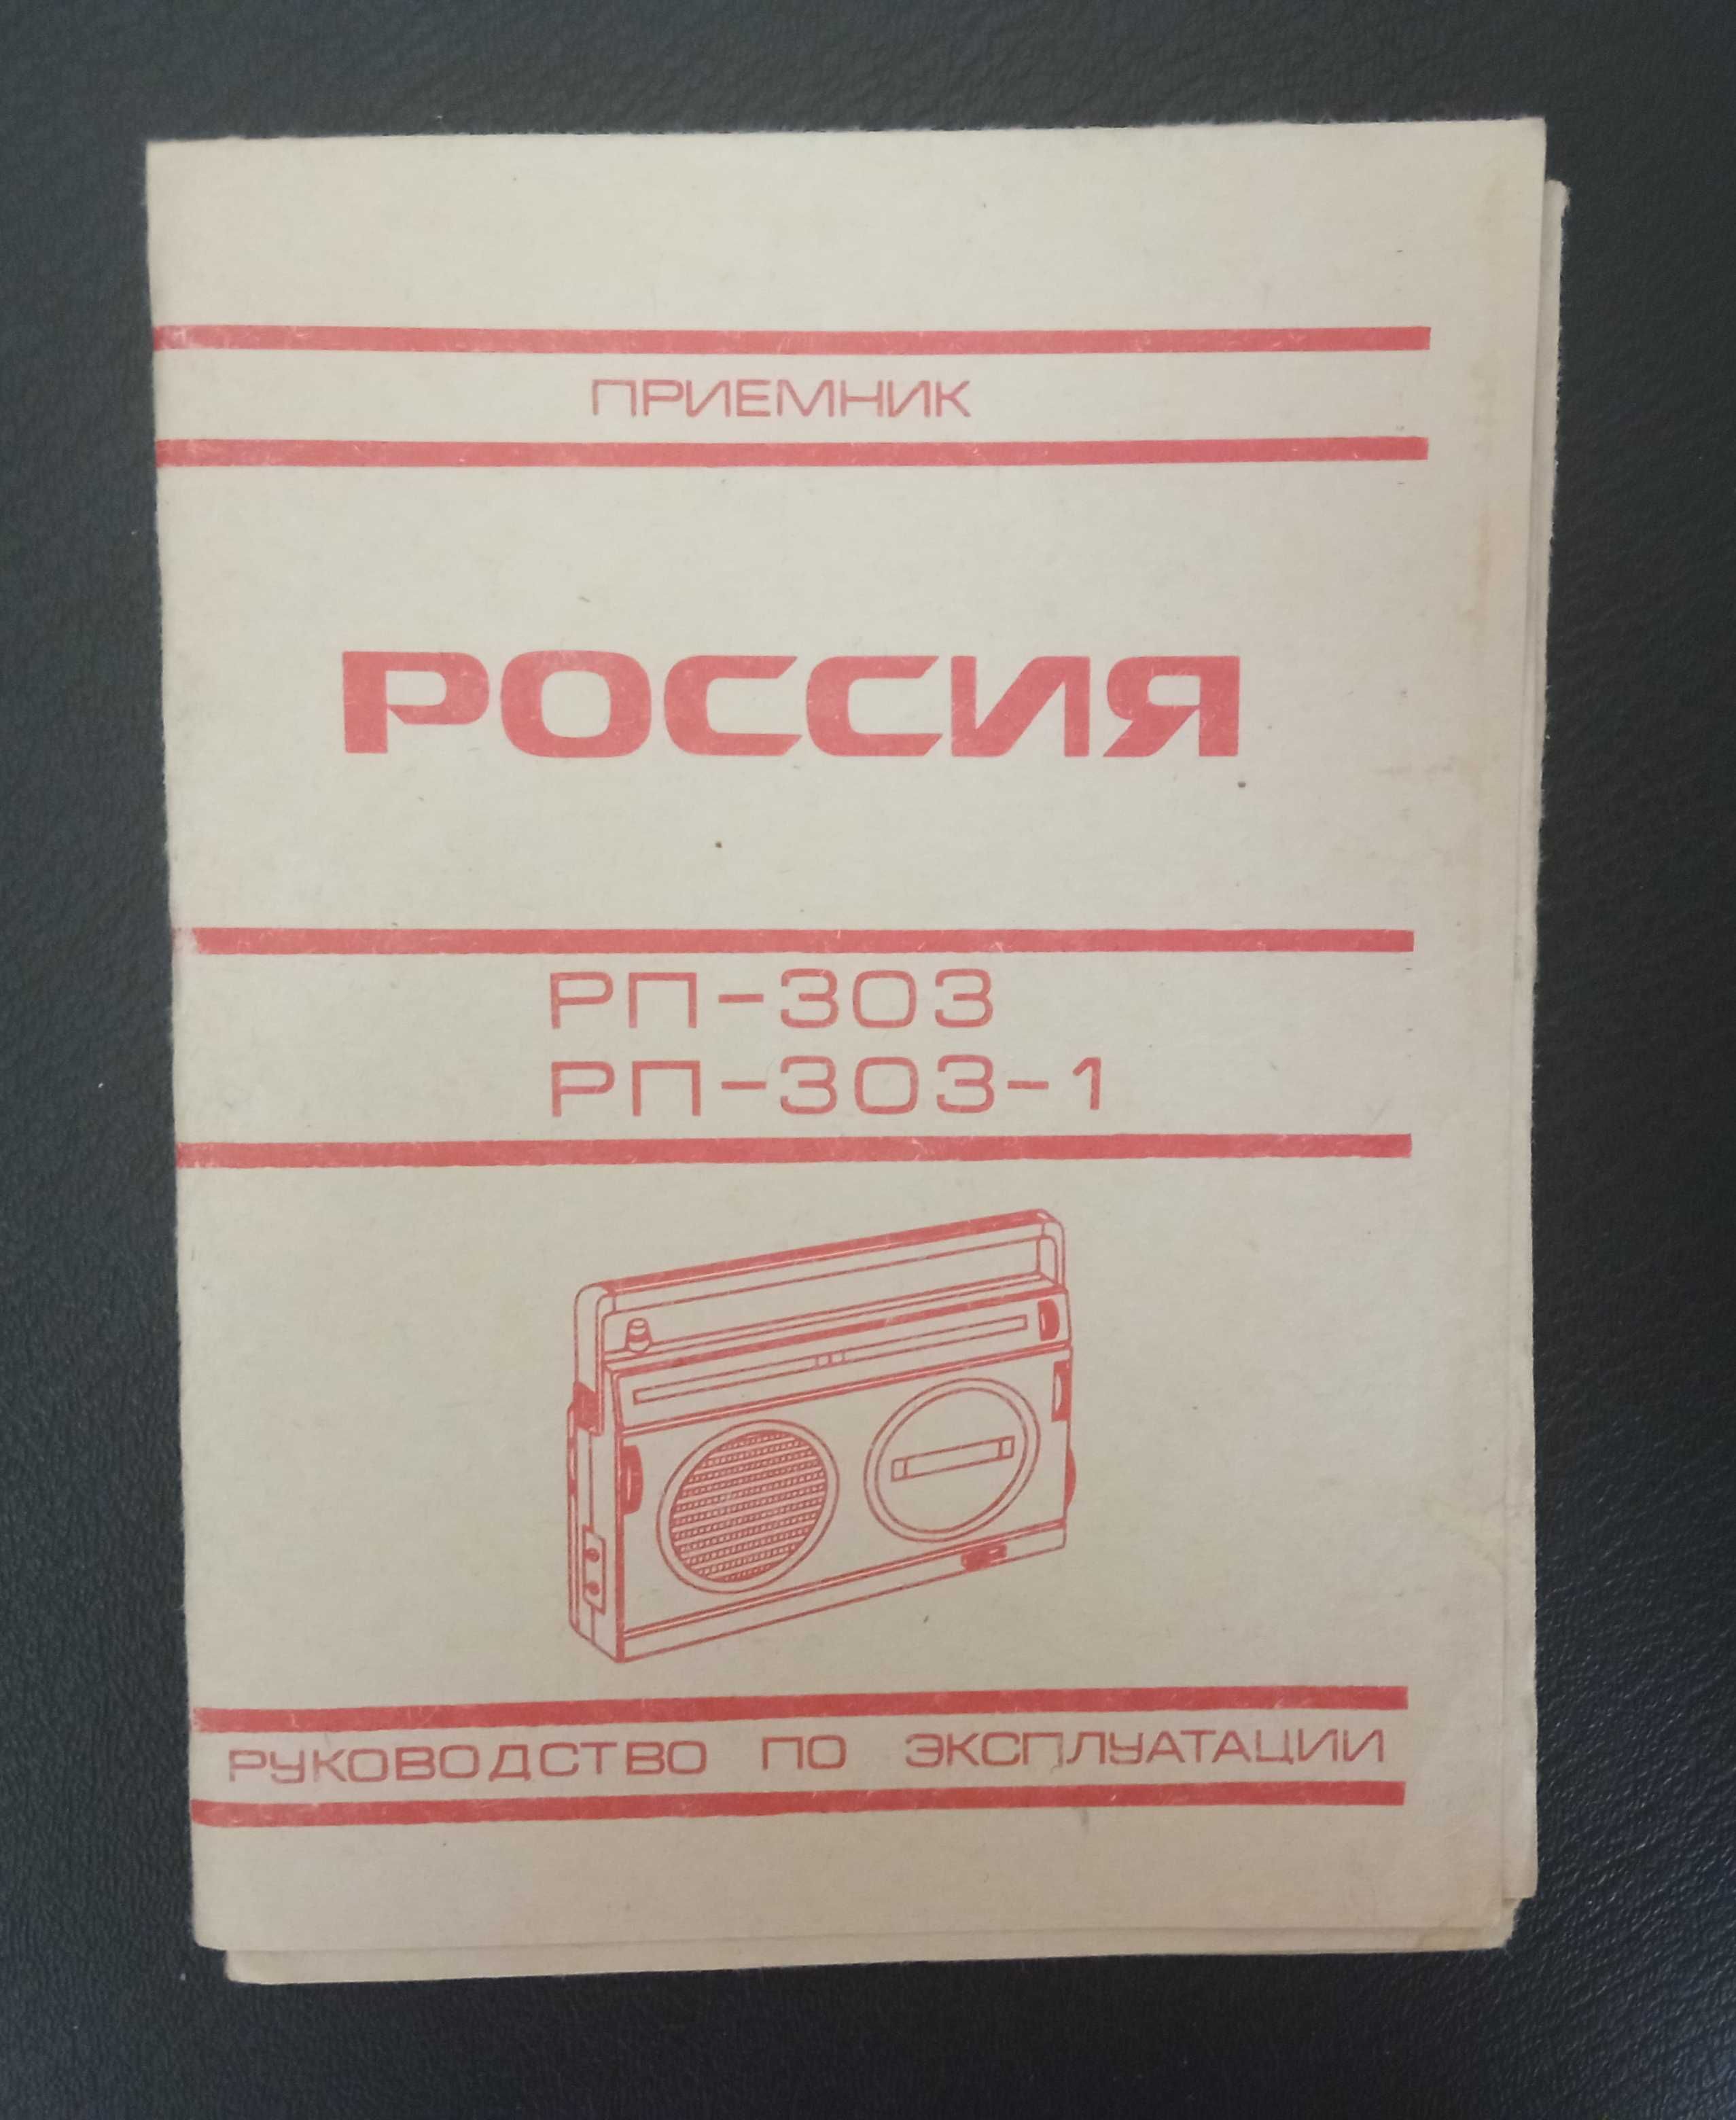 Приемник "Россия" РП-303